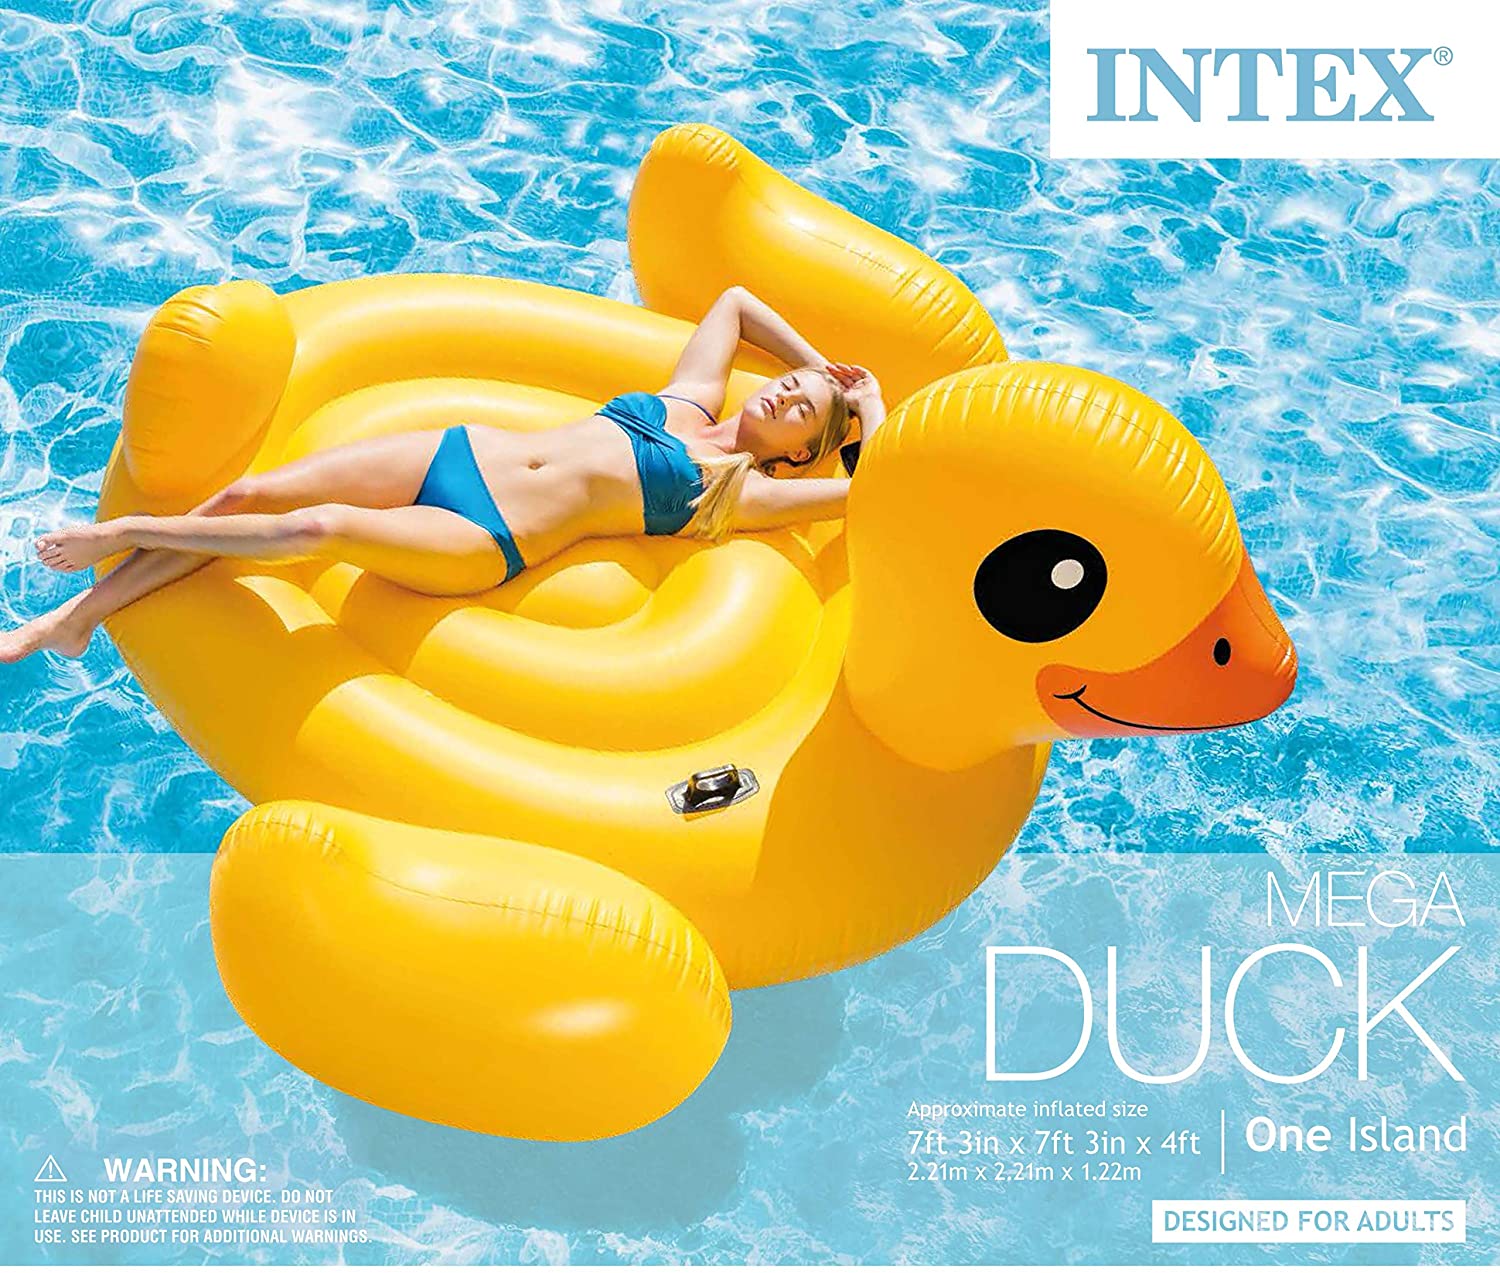 Intex Mega Yellow Duck, Inflatable Island